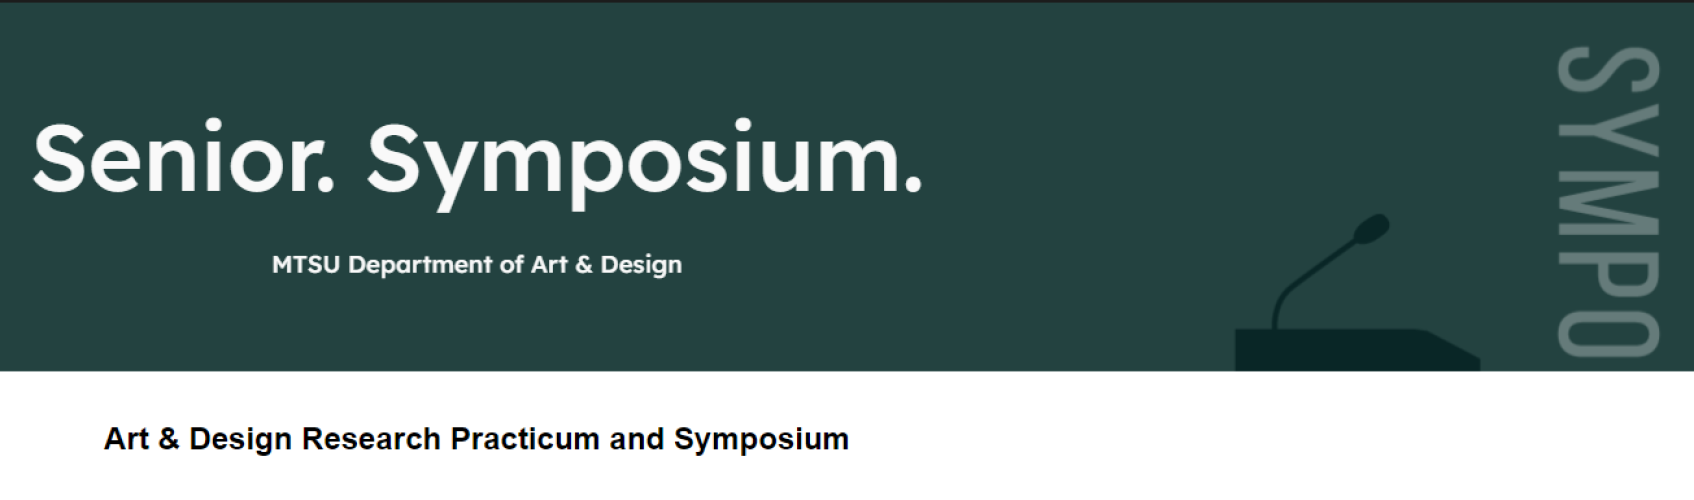 MTSU Department of Art and Design Senior Symposium